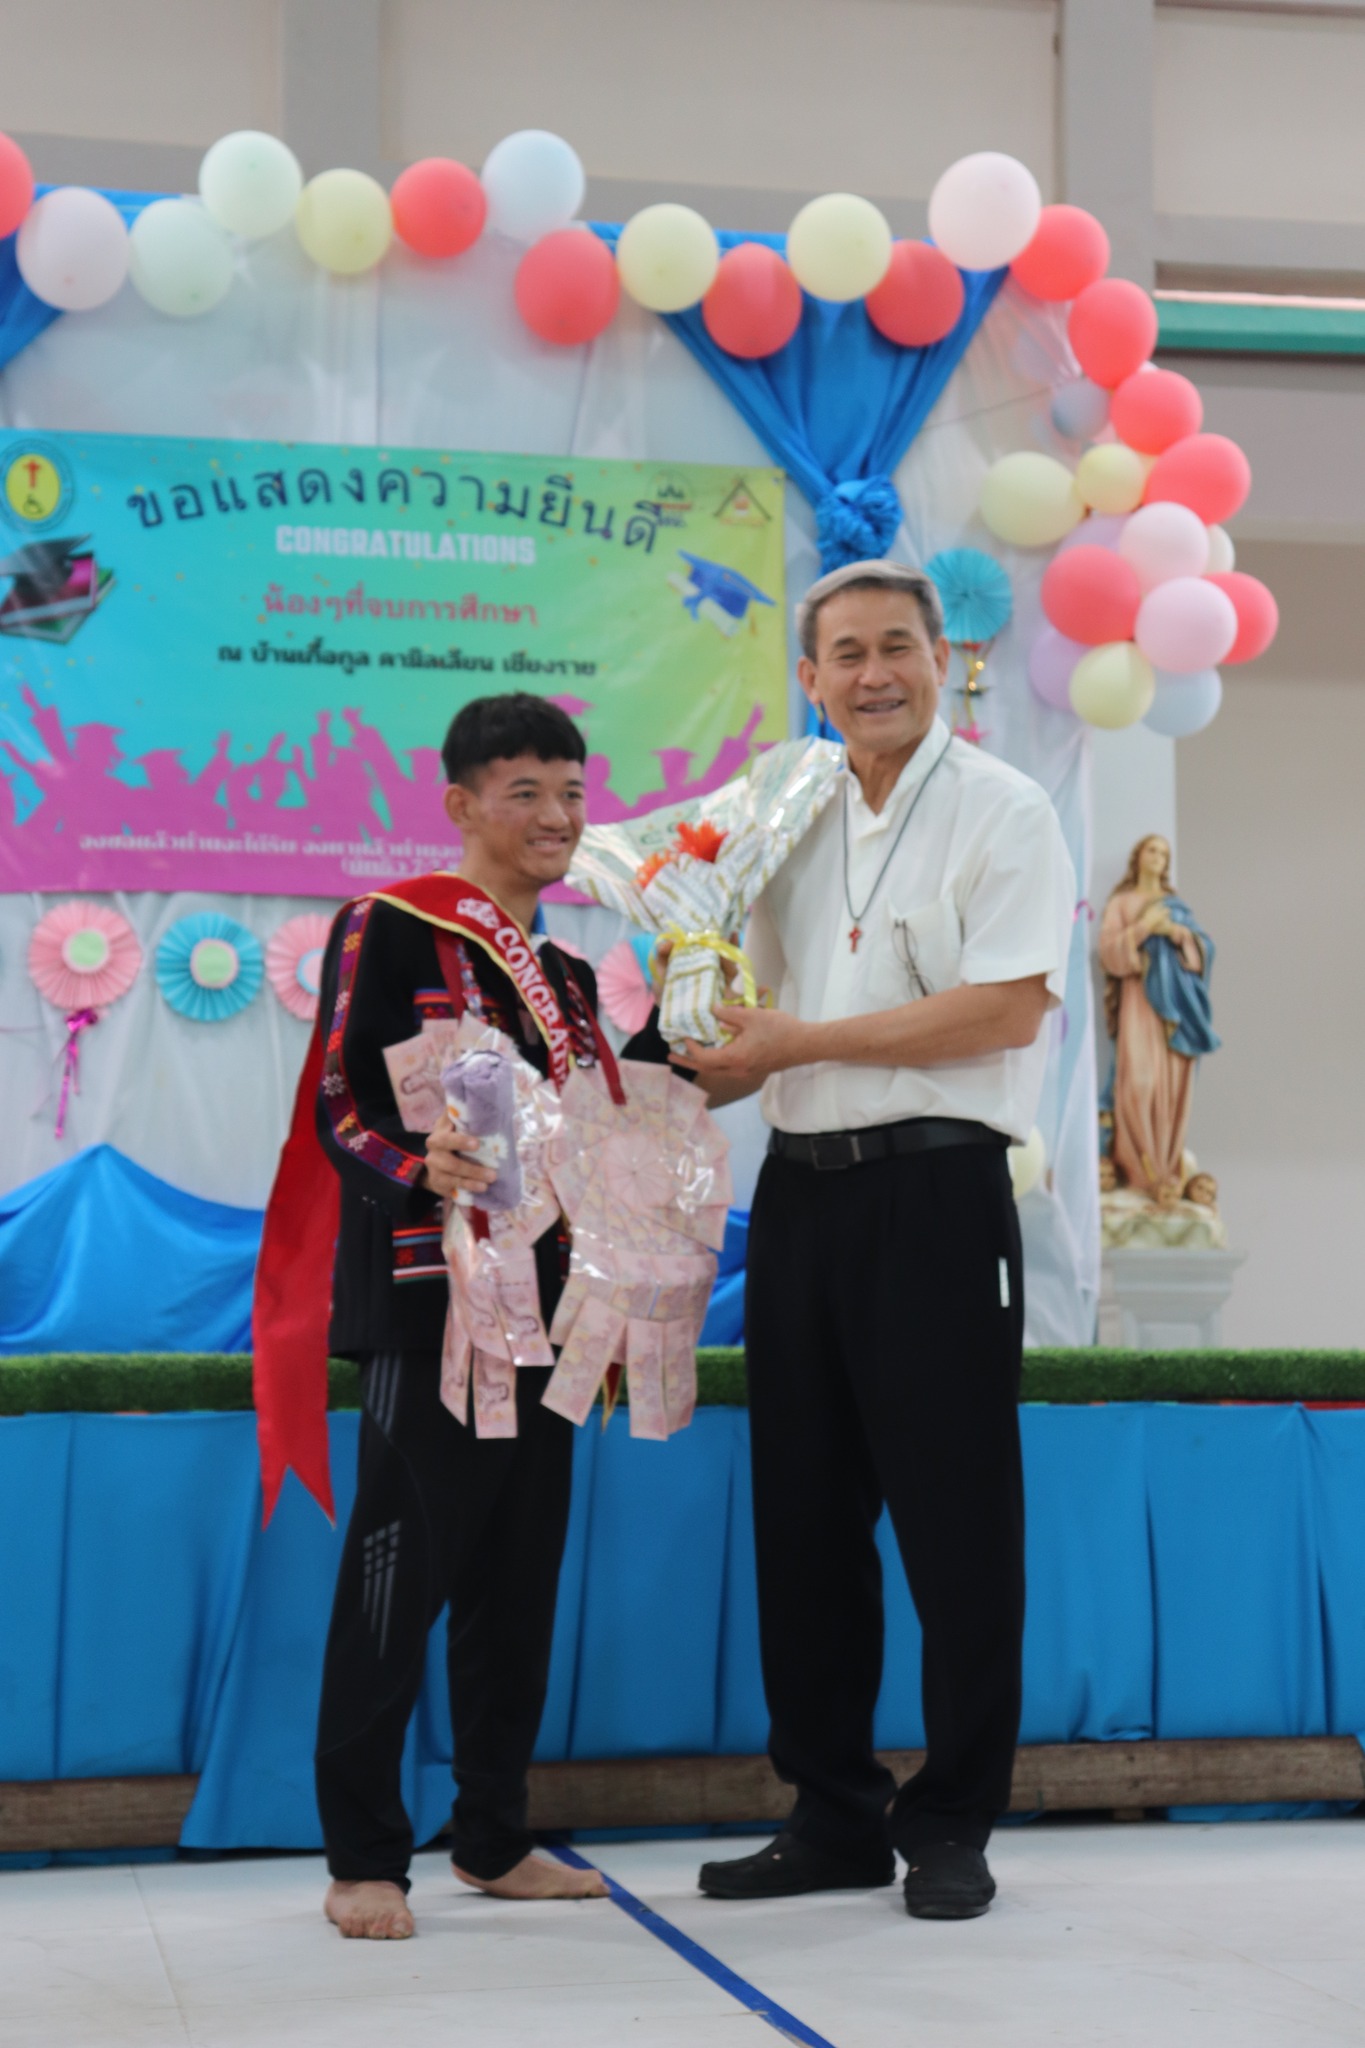 Congratulation Ceremony &  Teacher-parents Conference